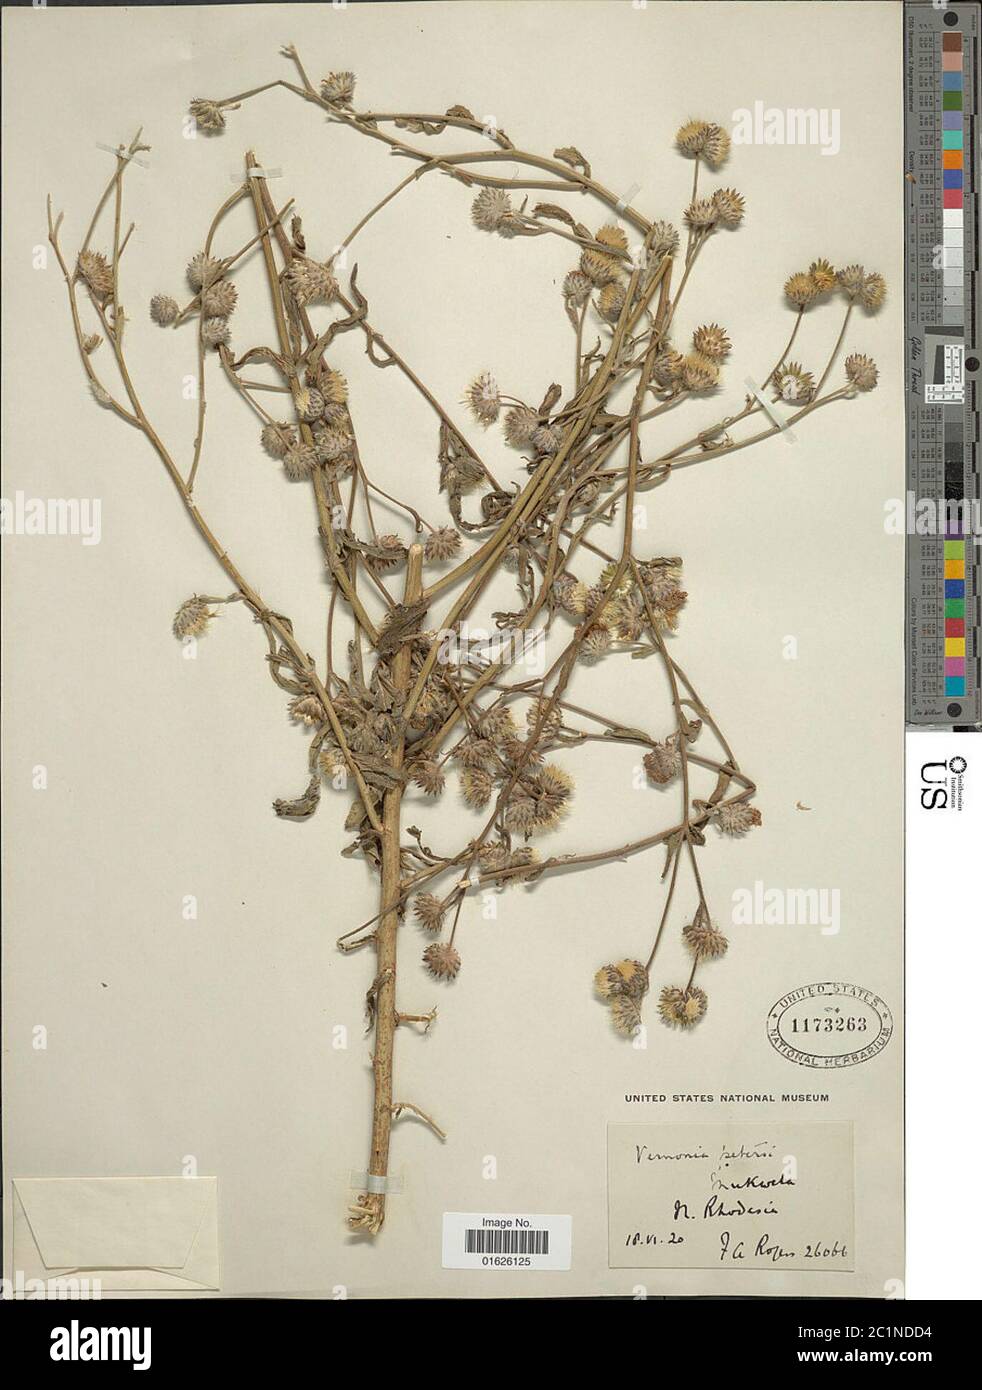 Vernoniastrum latifolium Steetz H Rob Vernoniastrum latifolium Steetz H Rob. Stock Photo